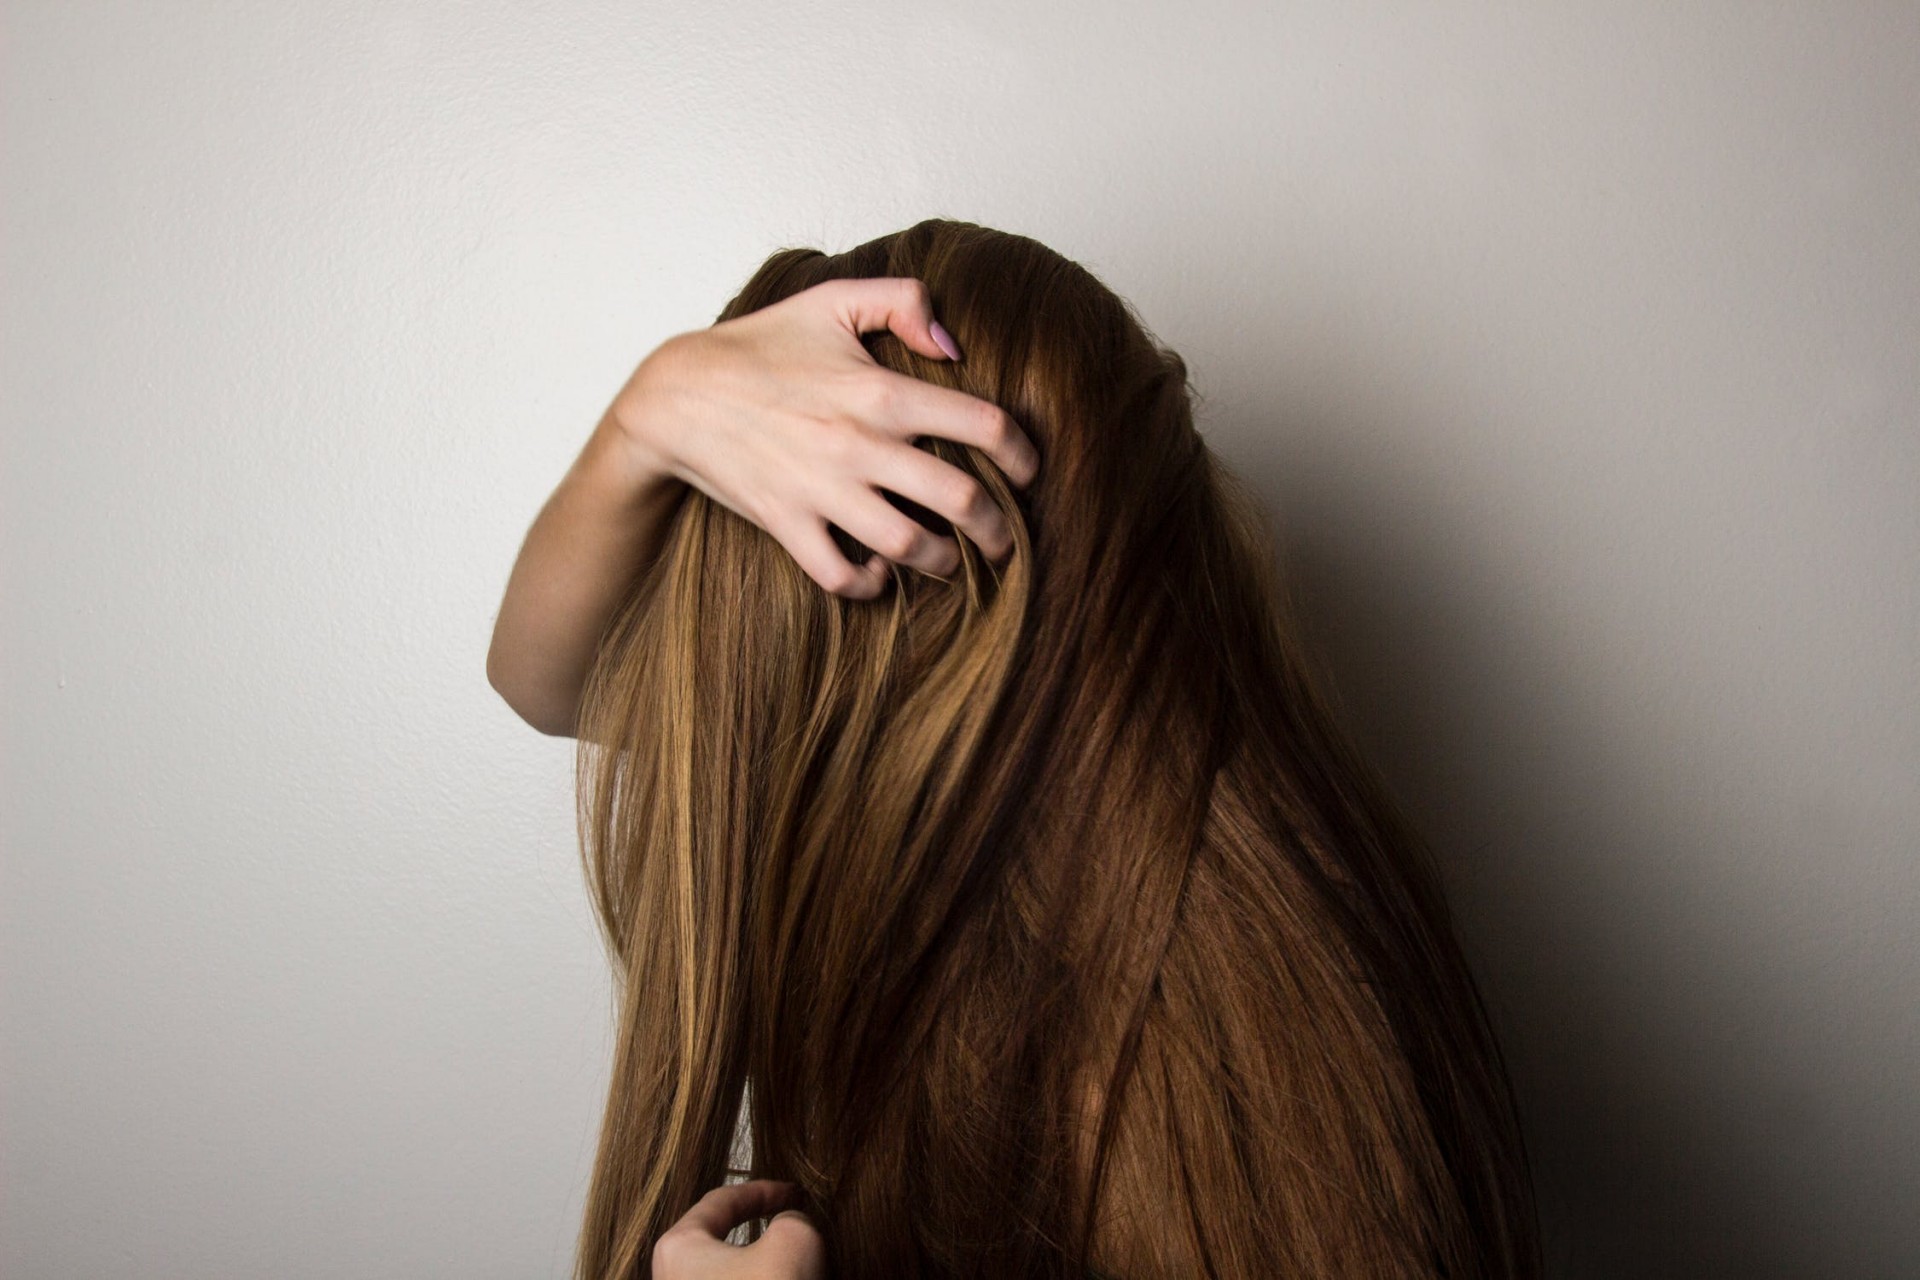 ФАКТ НА ДЕНОТ: Колку сантиметри месечно расте косата?